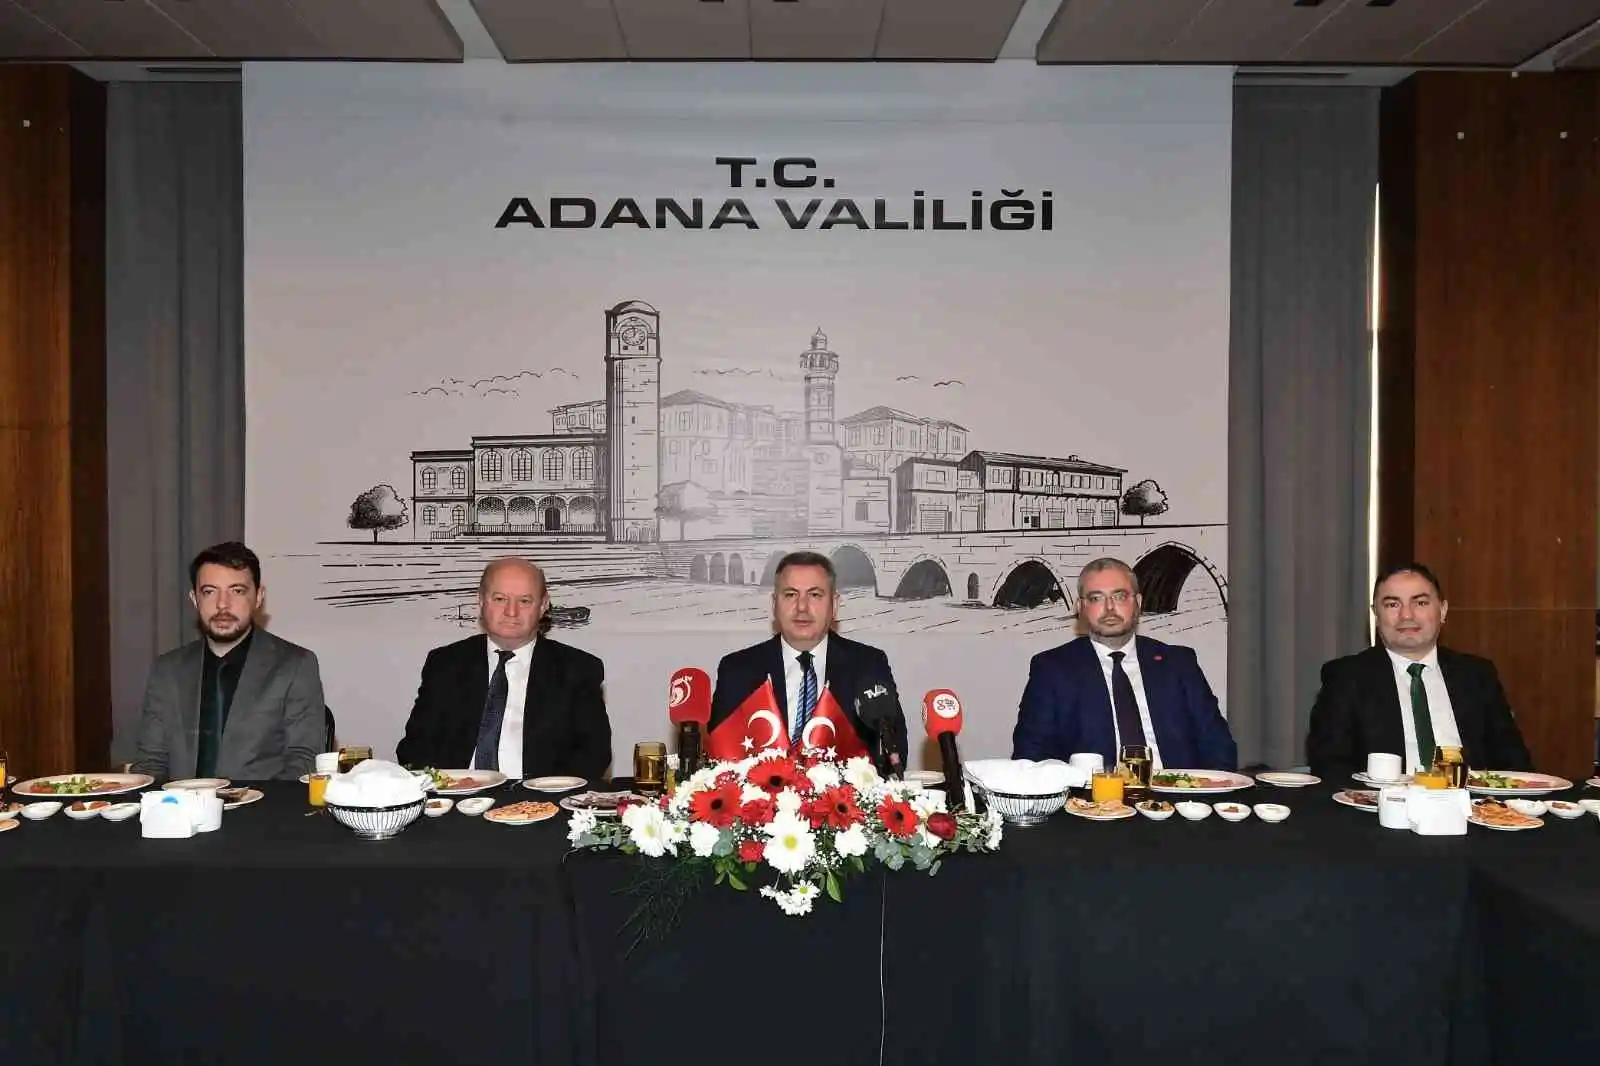 Adana Valisi Elban: "Gazeteciler zor şartlarda doğru bilgiyi vermek için mücadele ediyor"
